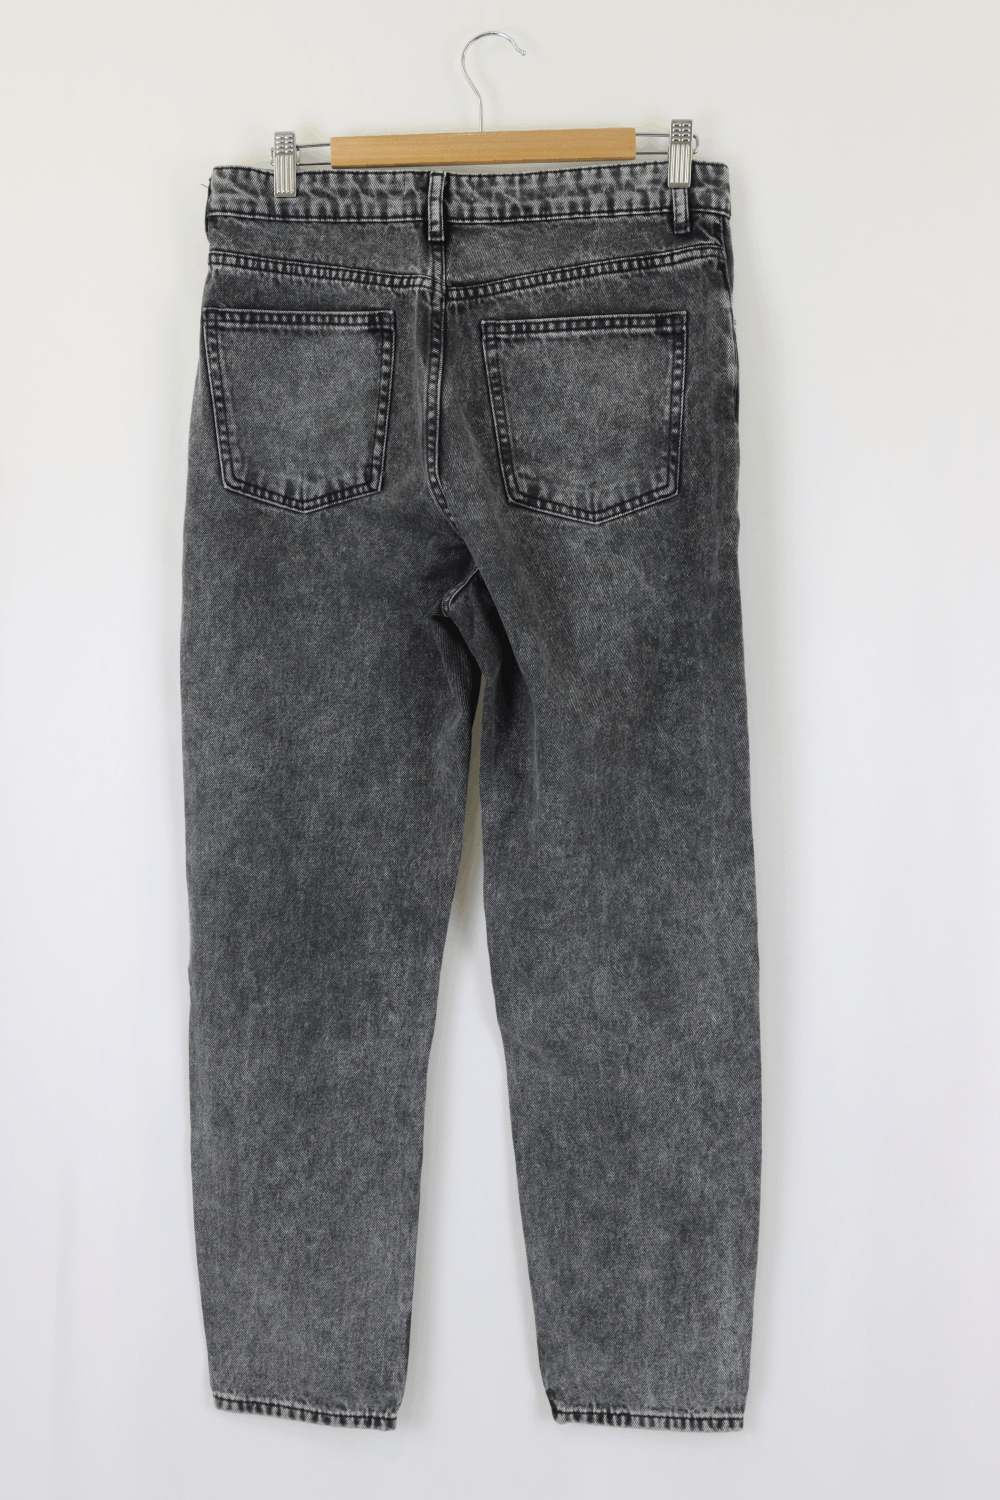 Zara Grey Jeans 8